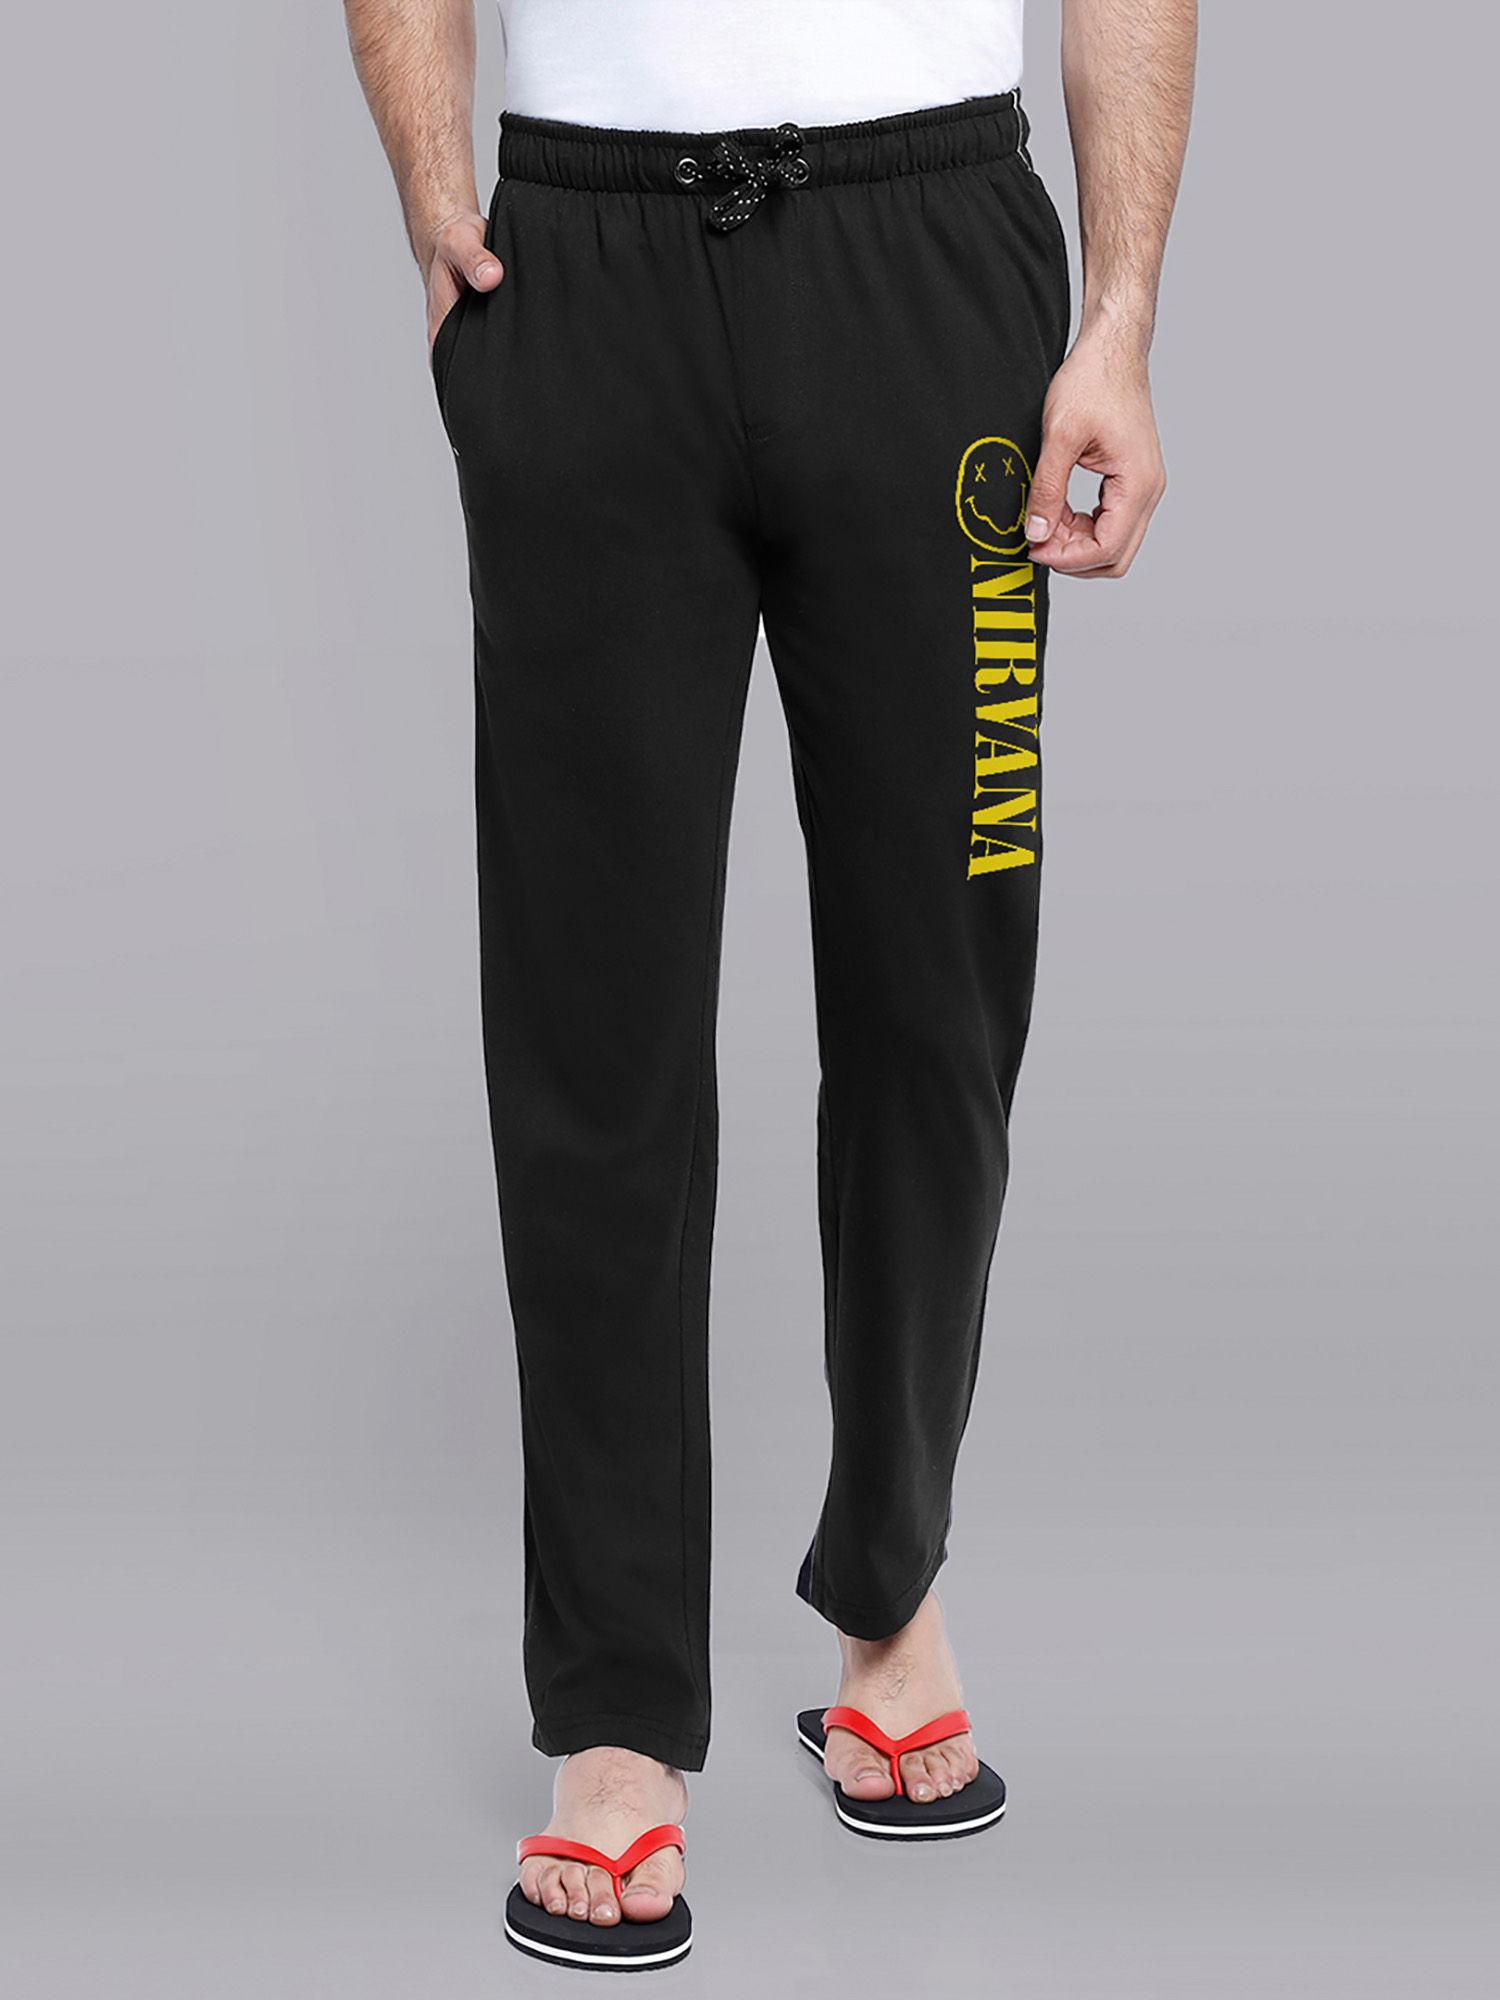 nirvana-printed-black-pyjama-for-men-black